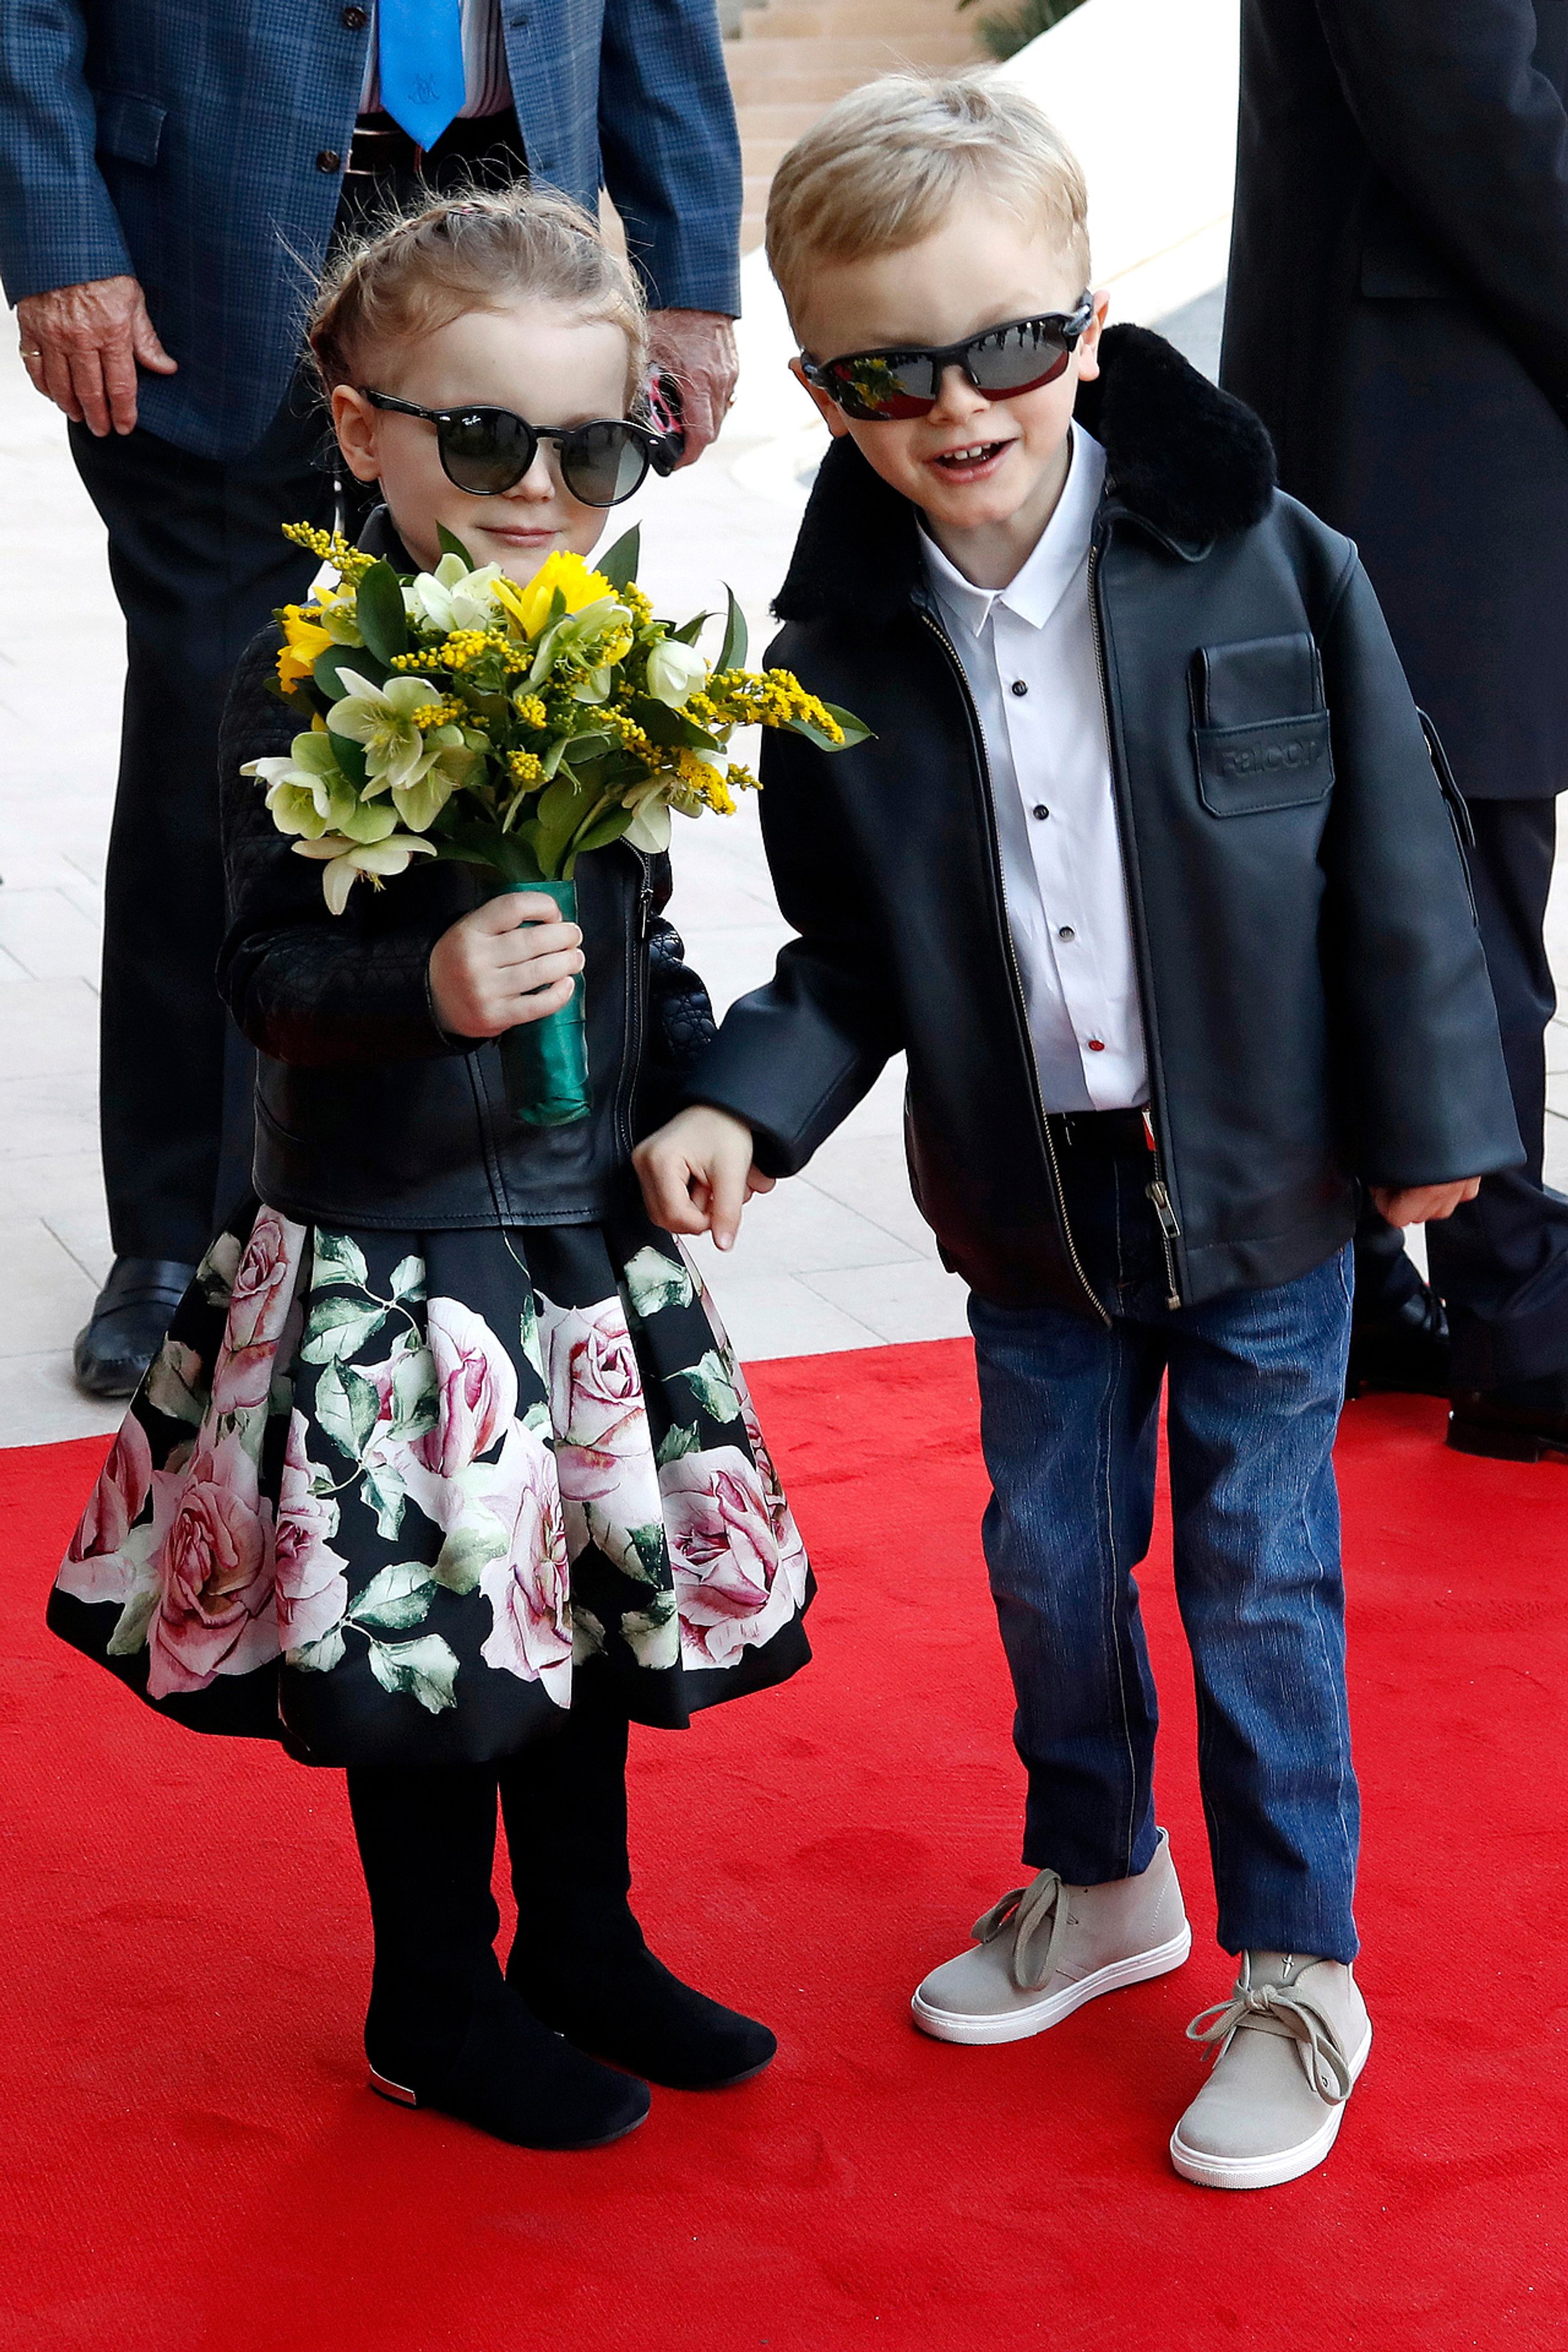 Ook jonge royals houden van zonnebrillen! Zoals Jacques en Gabriella, de koninklijke tweeling uit